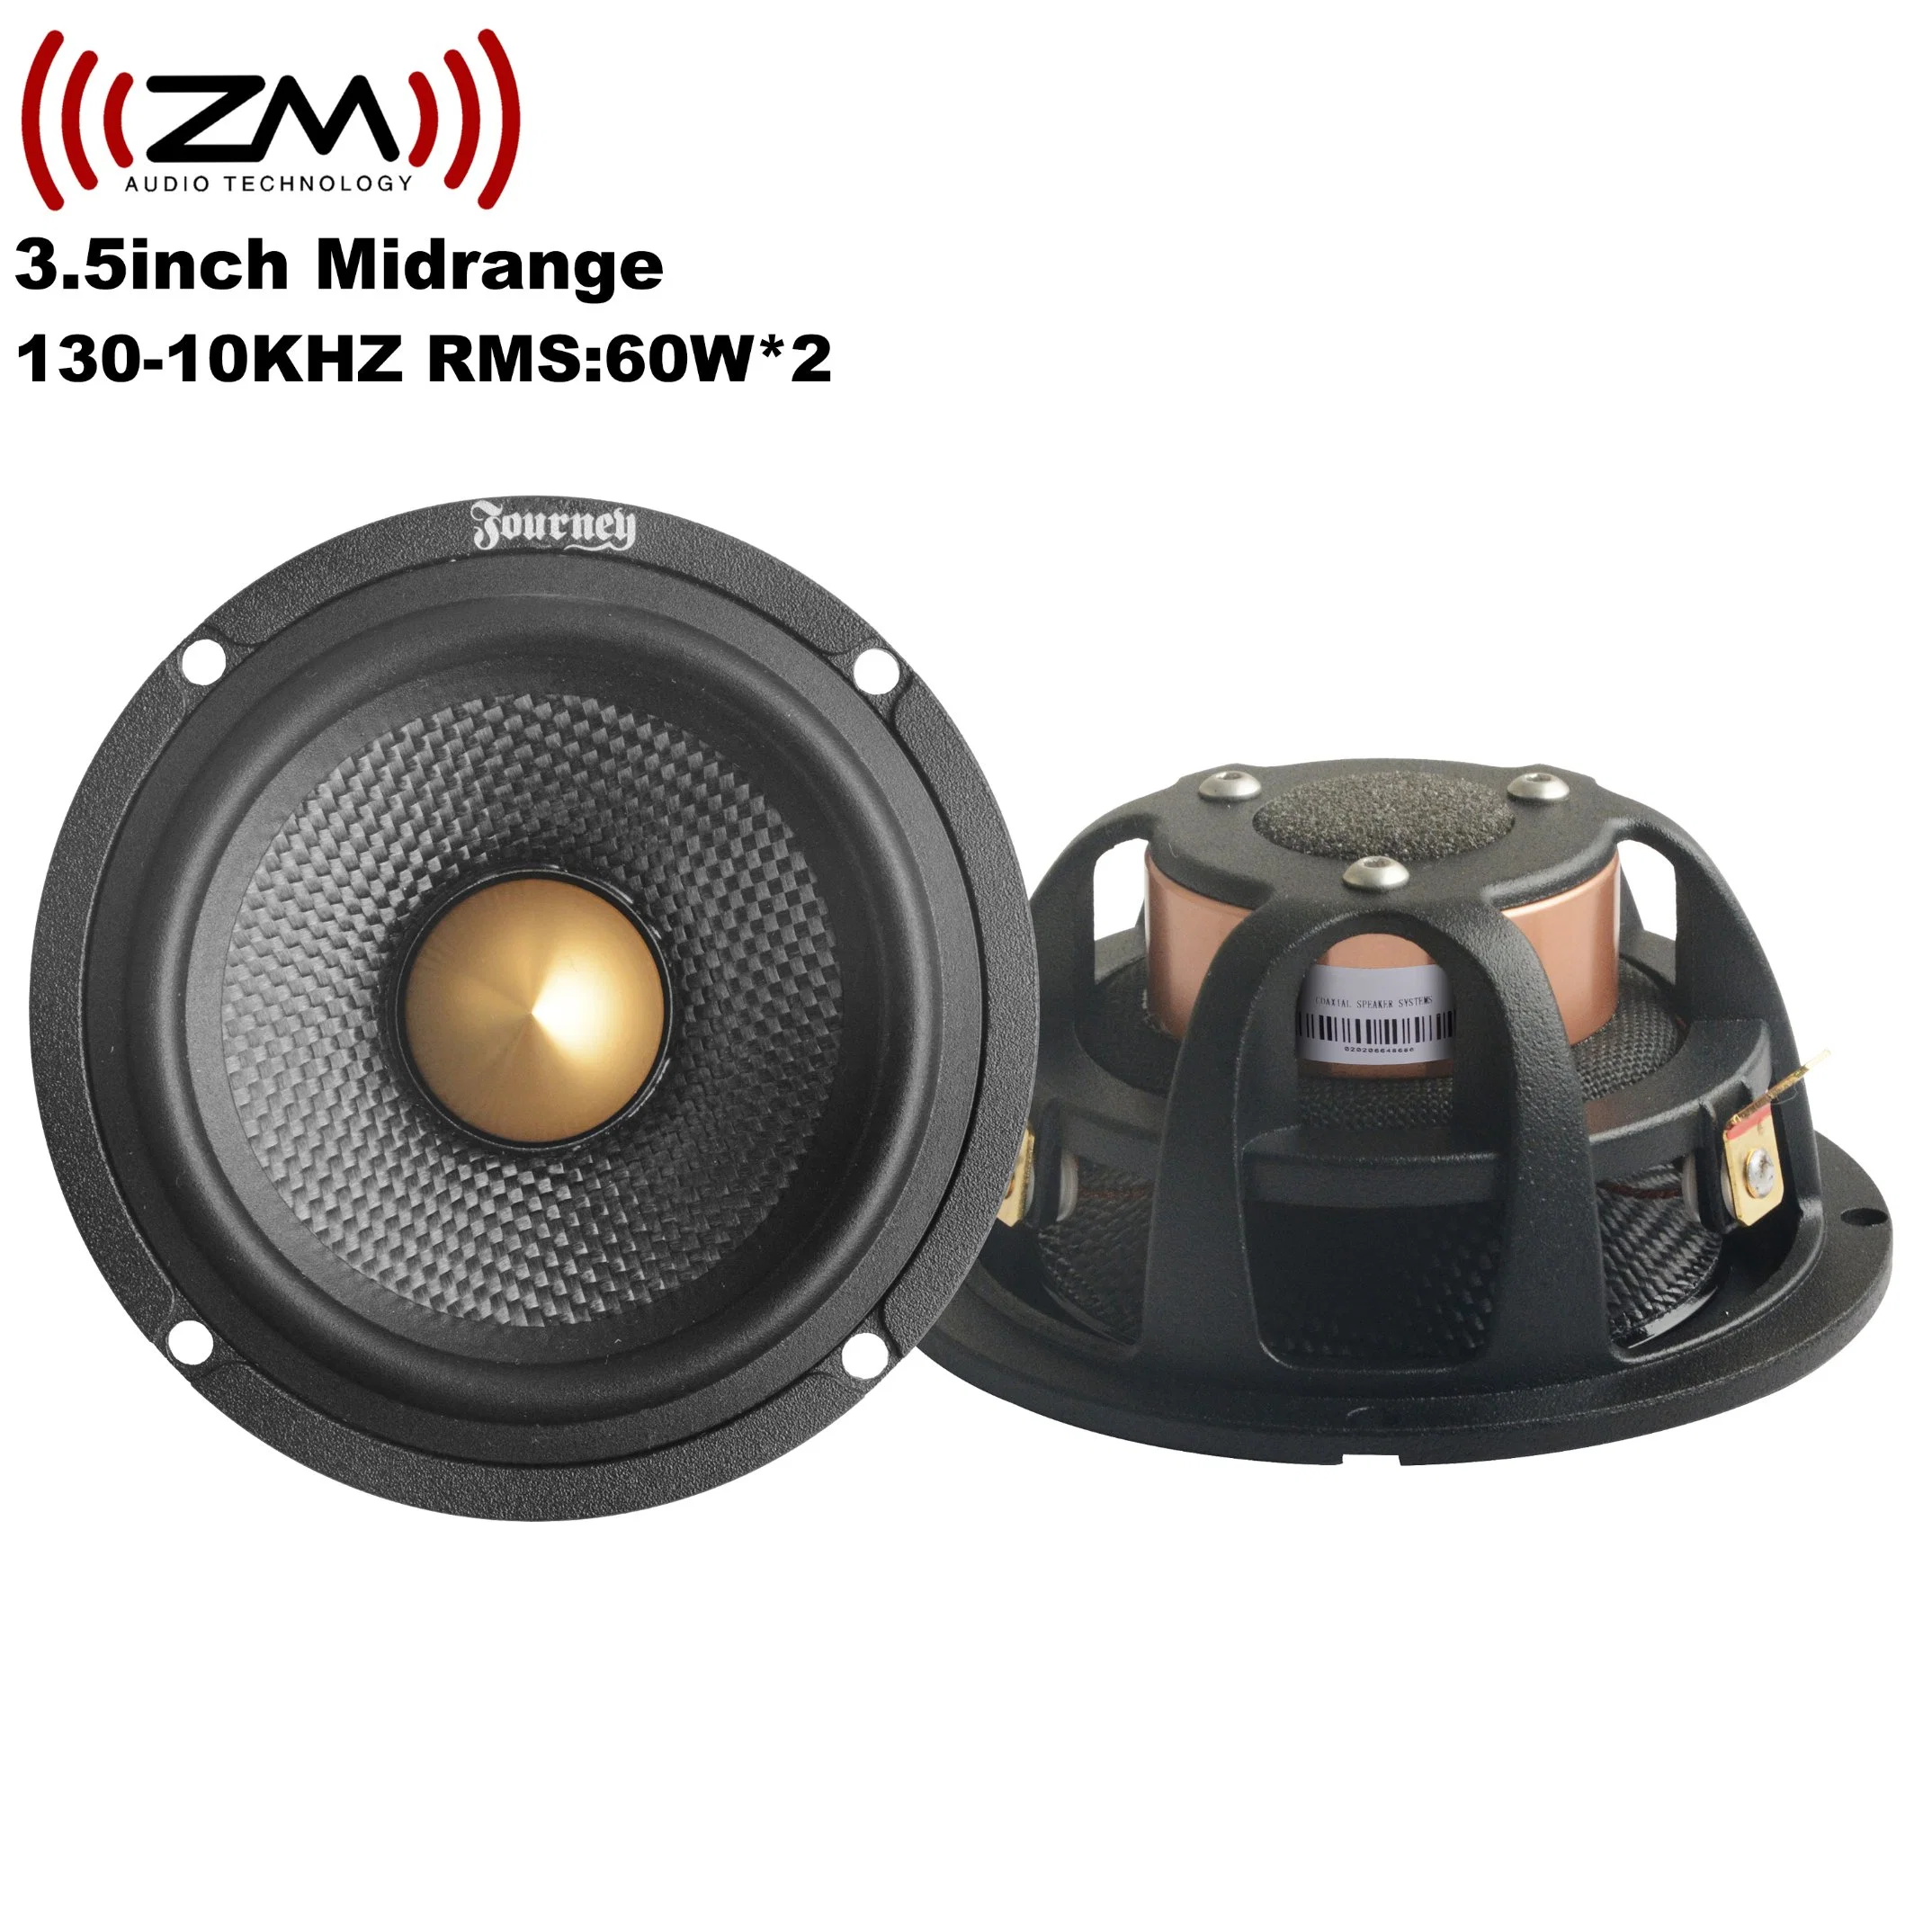 High End Midrange Speaker Car Audio 3.5" Louderspeaker Bullet Cars Sound MID Range Horn